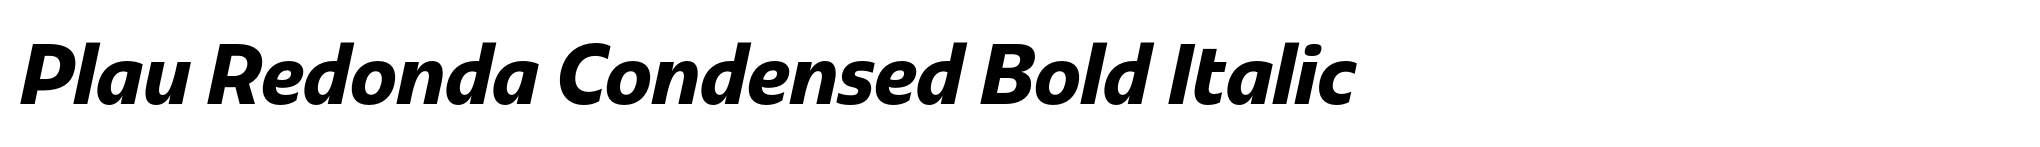 Plau Redonda Condensed Bold Italic image